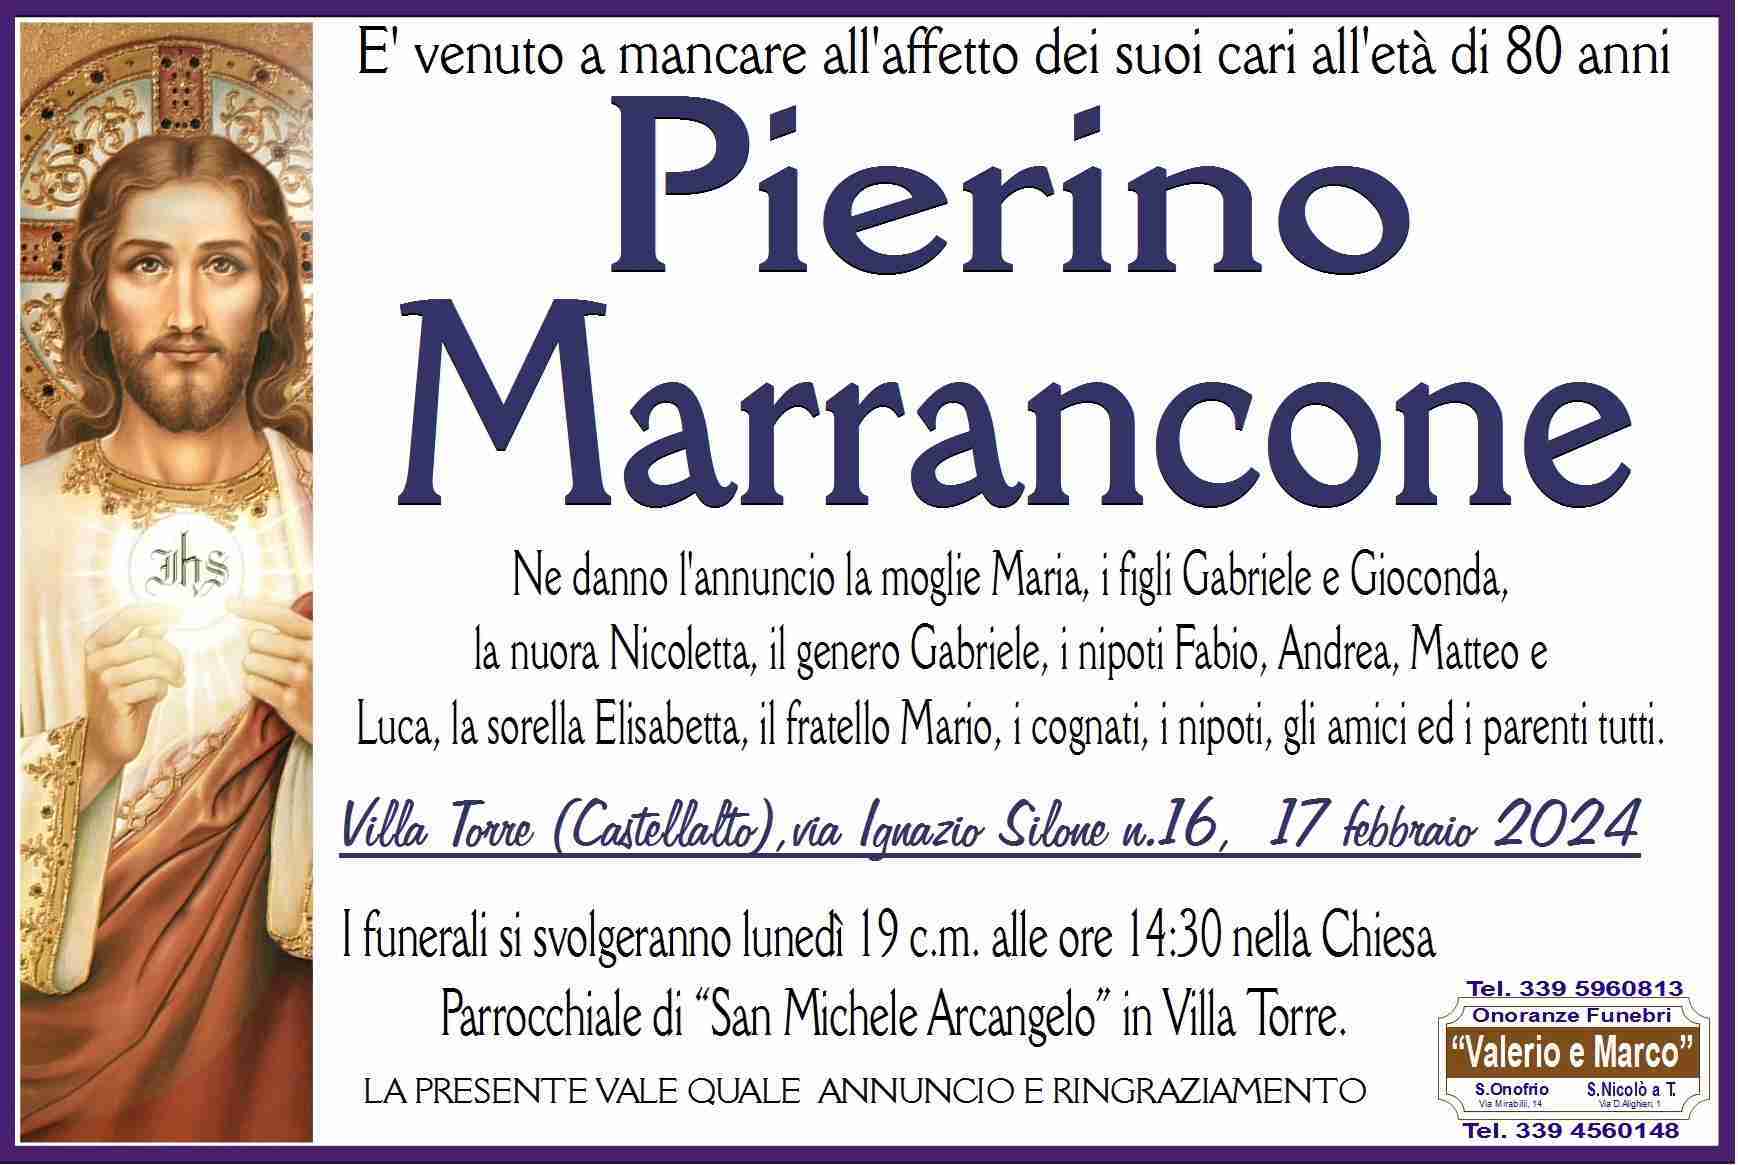 Pierino Marrancone